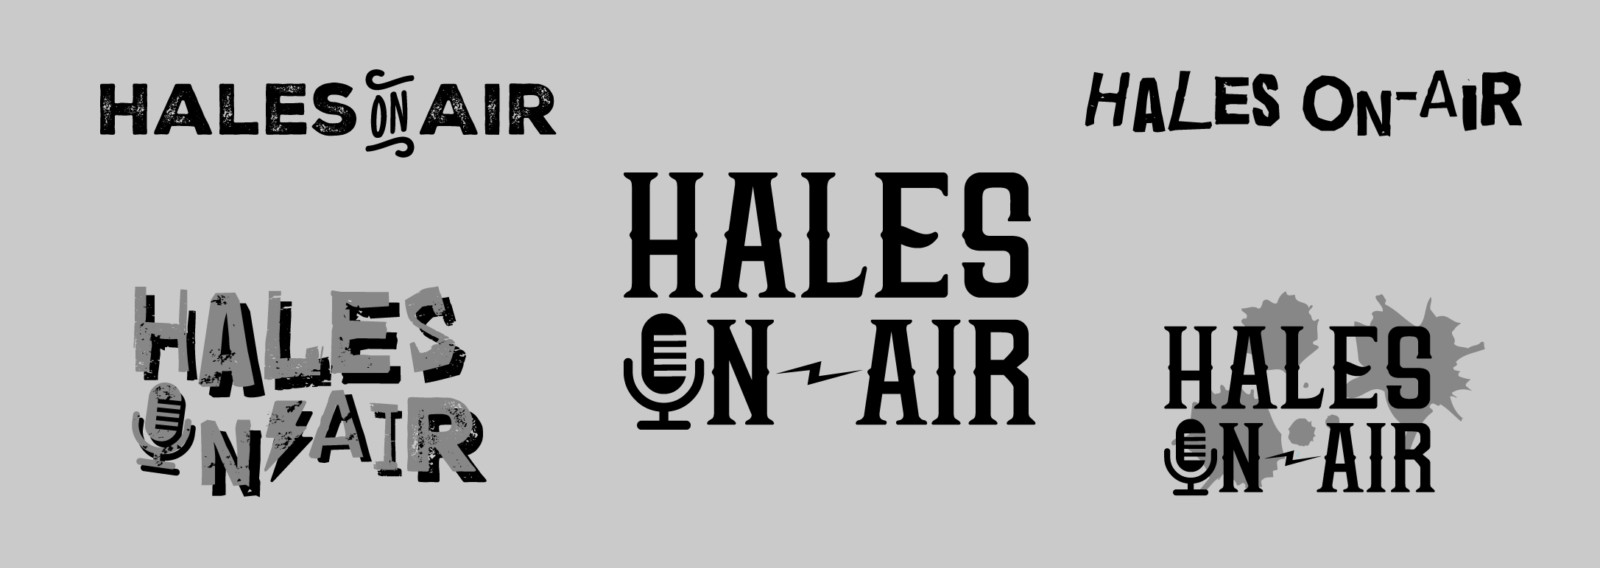 Hales On-Air